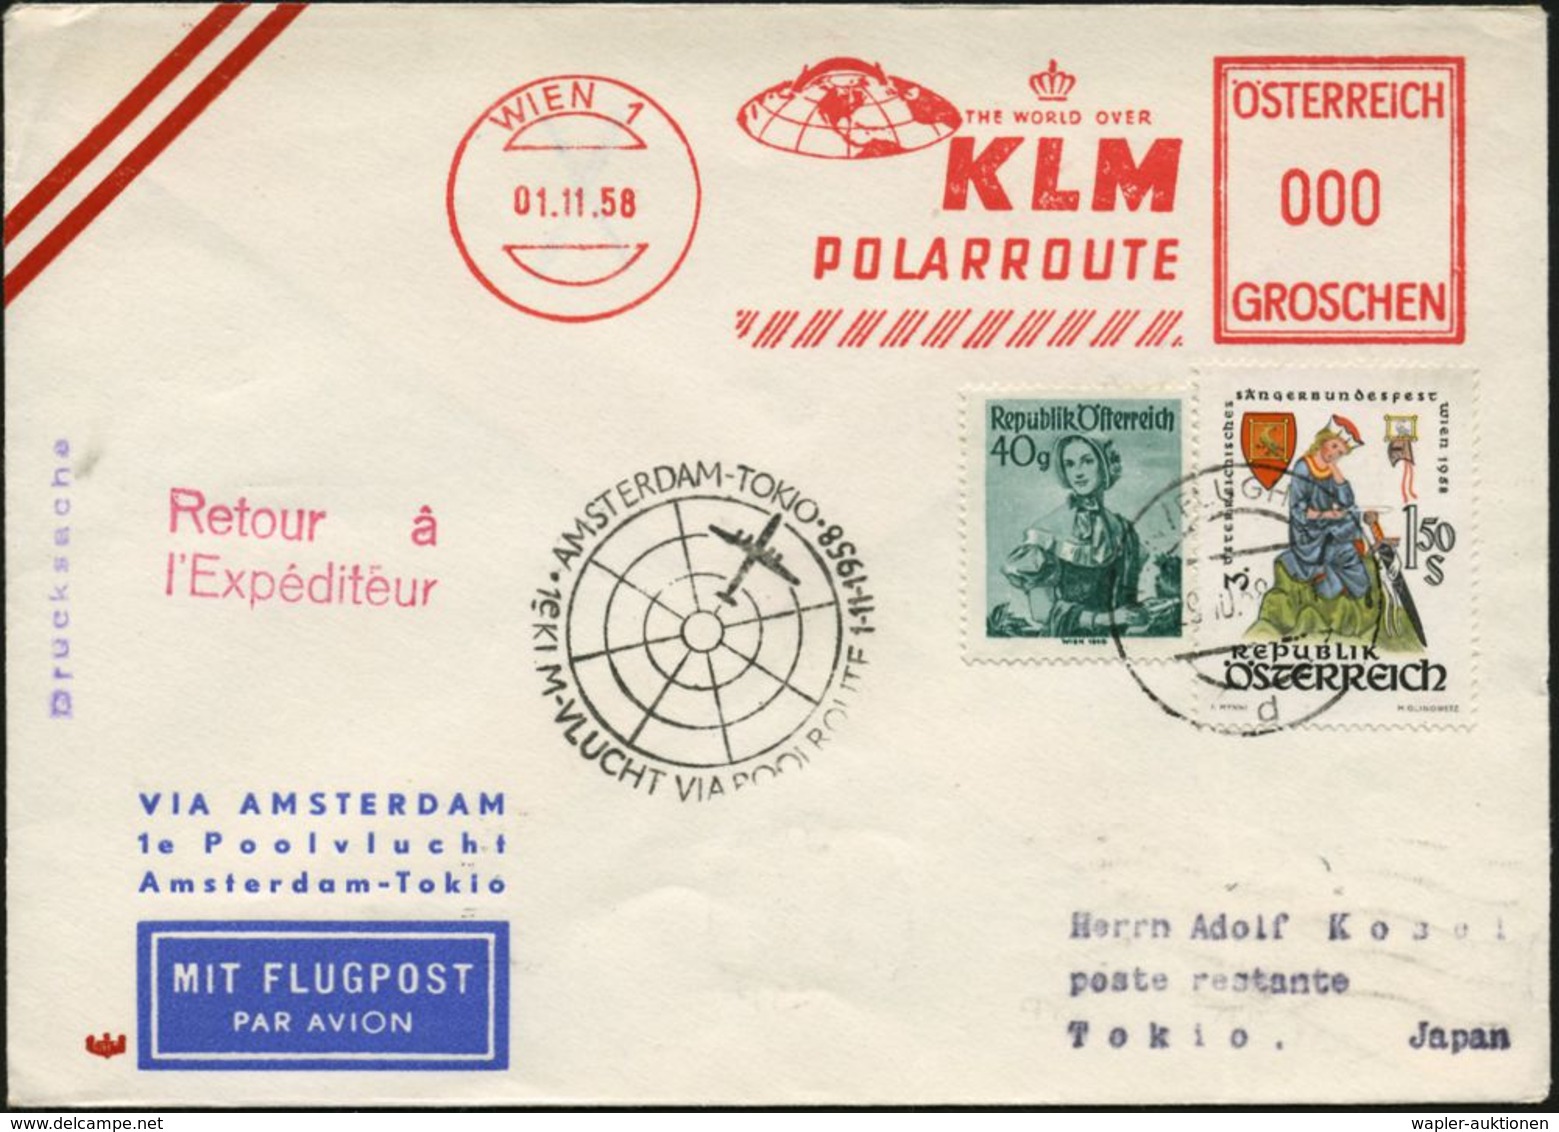 ÖSTERREICH 1958 (1.11.) Erstflug-Bf. (KLM): Amsterdam - Tokyo Via Nordpol (AS) AFS 000: WIEN 1/KLM/POLARROUTE (nördl. Gl - Arctische Expedities